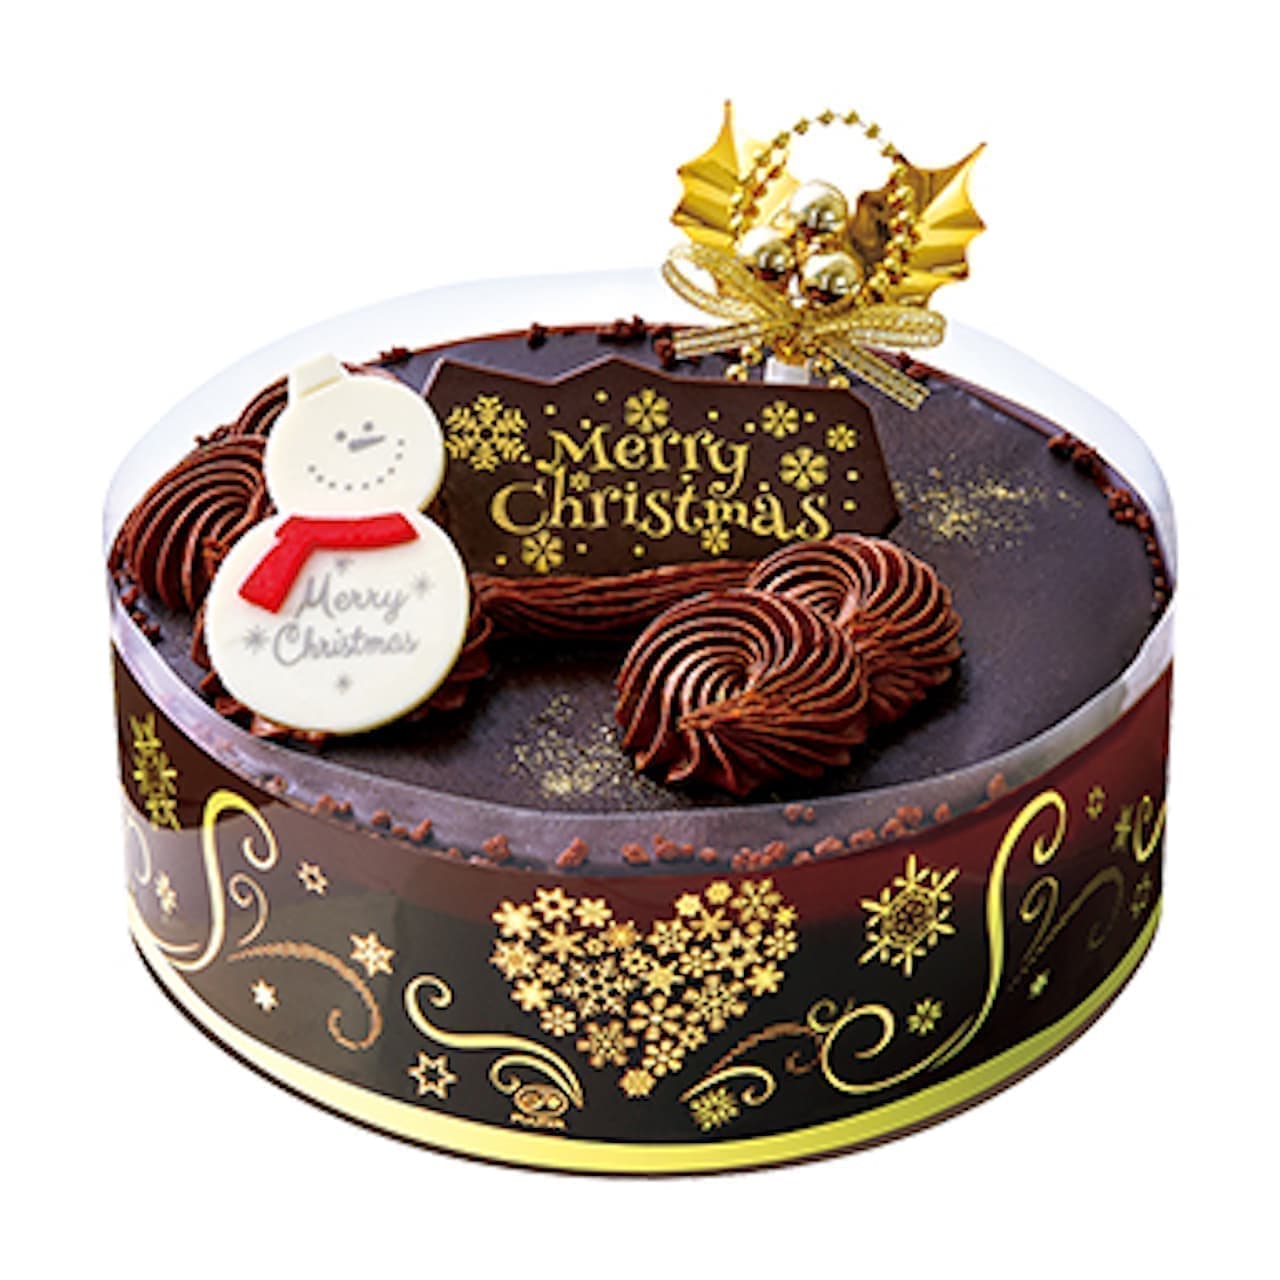 Fujiya "Christmas Premium Chocolate Fresh Cake